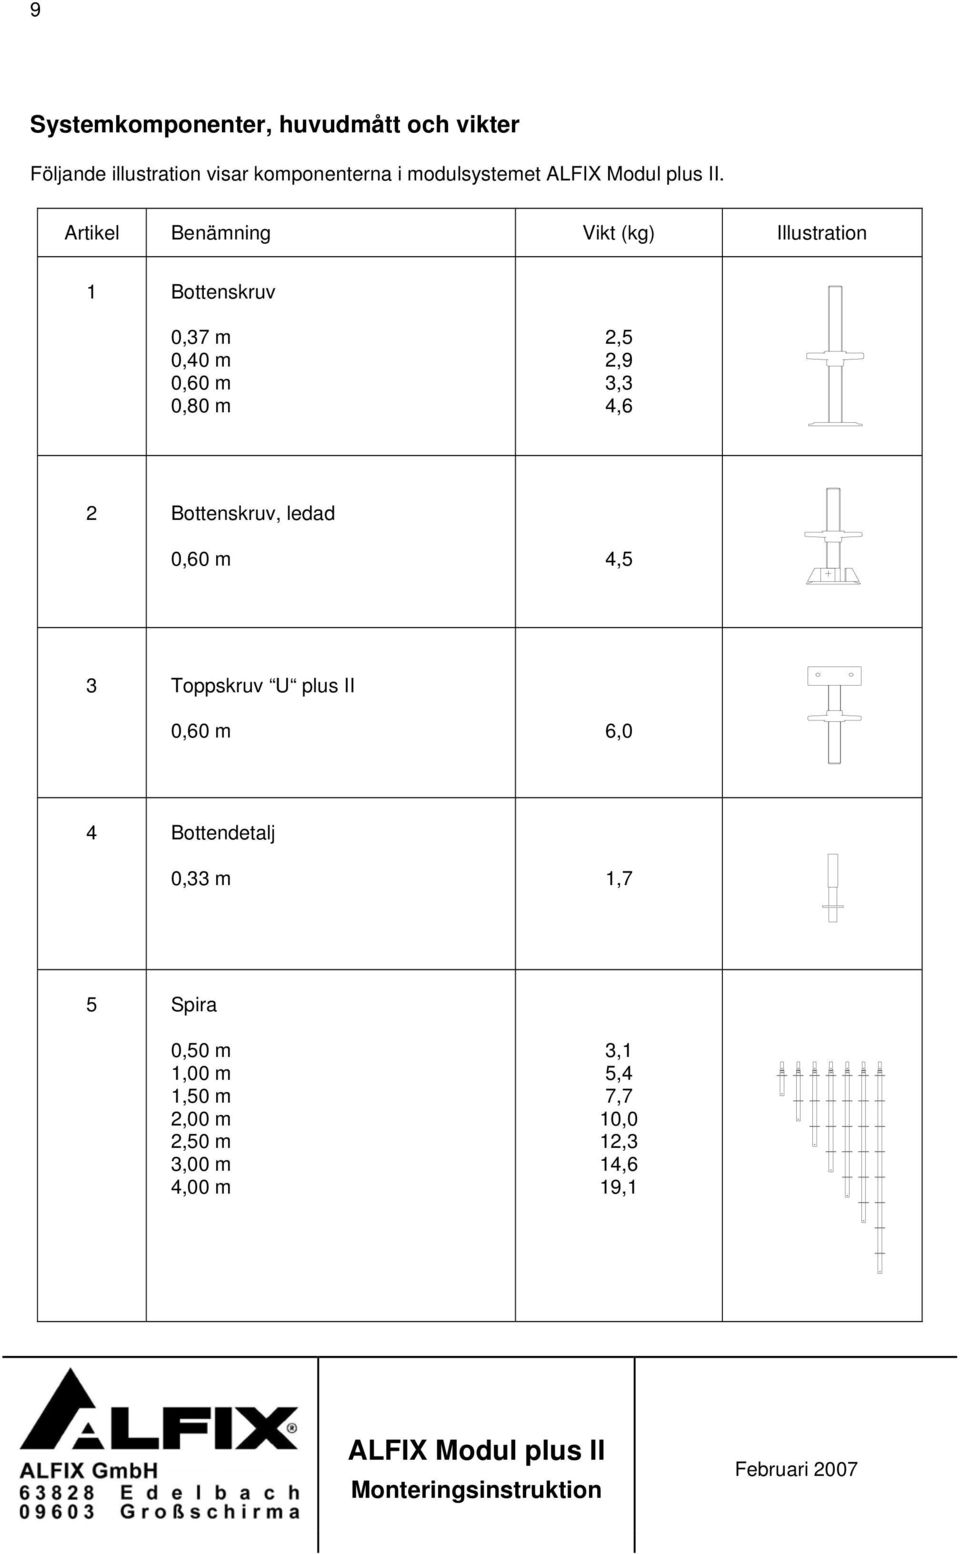 Artikel Benämning Vikt (kg) Illustration 1 Bottenskruv 0,37 m 0,40 m 0,60 m 0,80 m 2,5 2,9 3,3